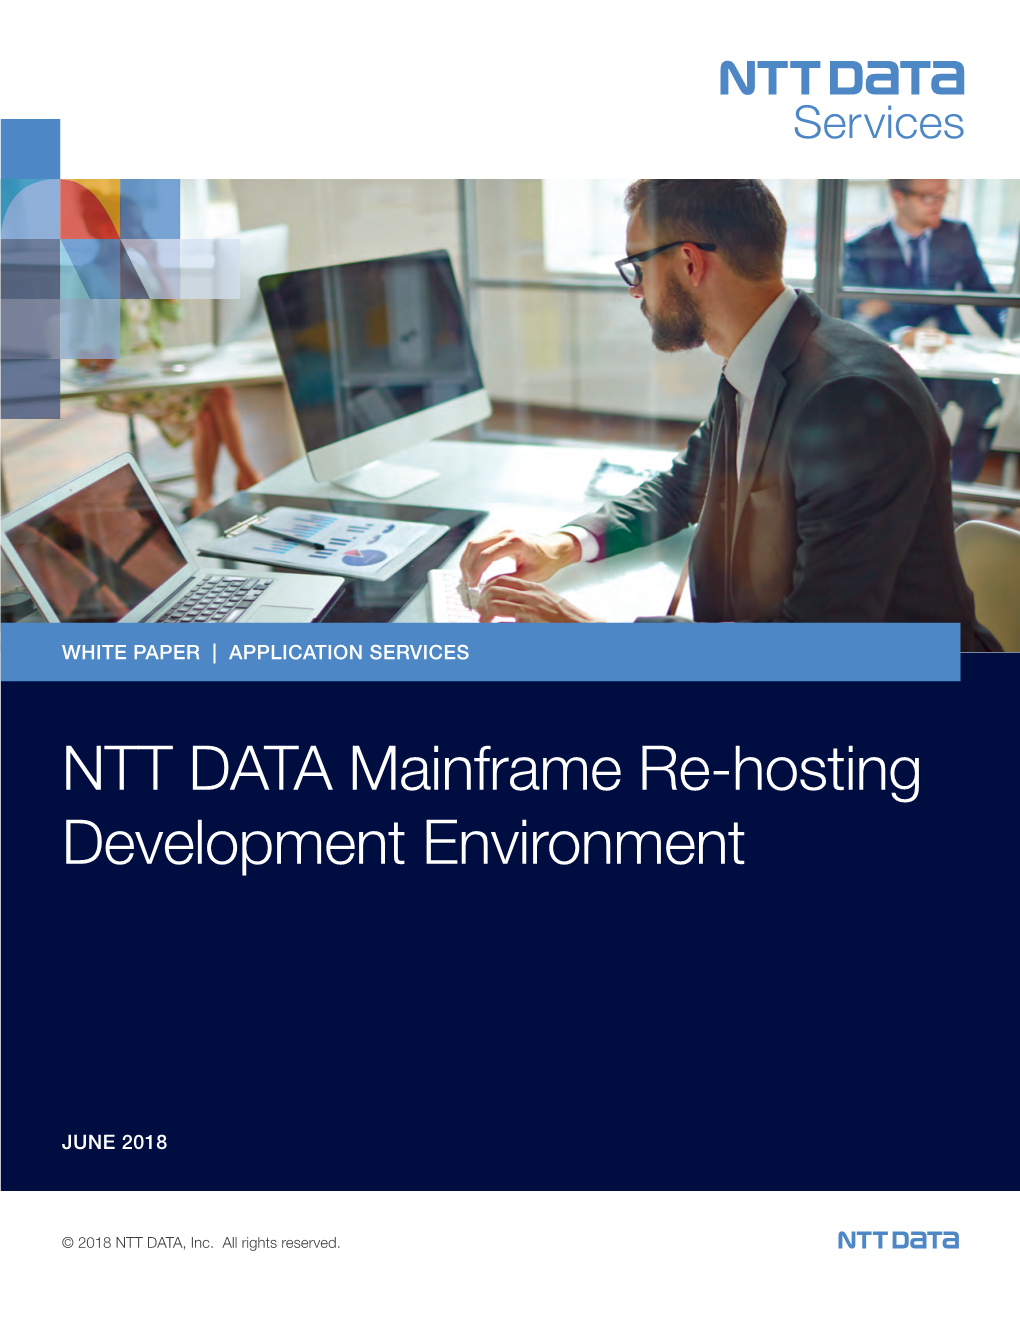 NTT DATA Mainframe Re-Hosting Development Environment